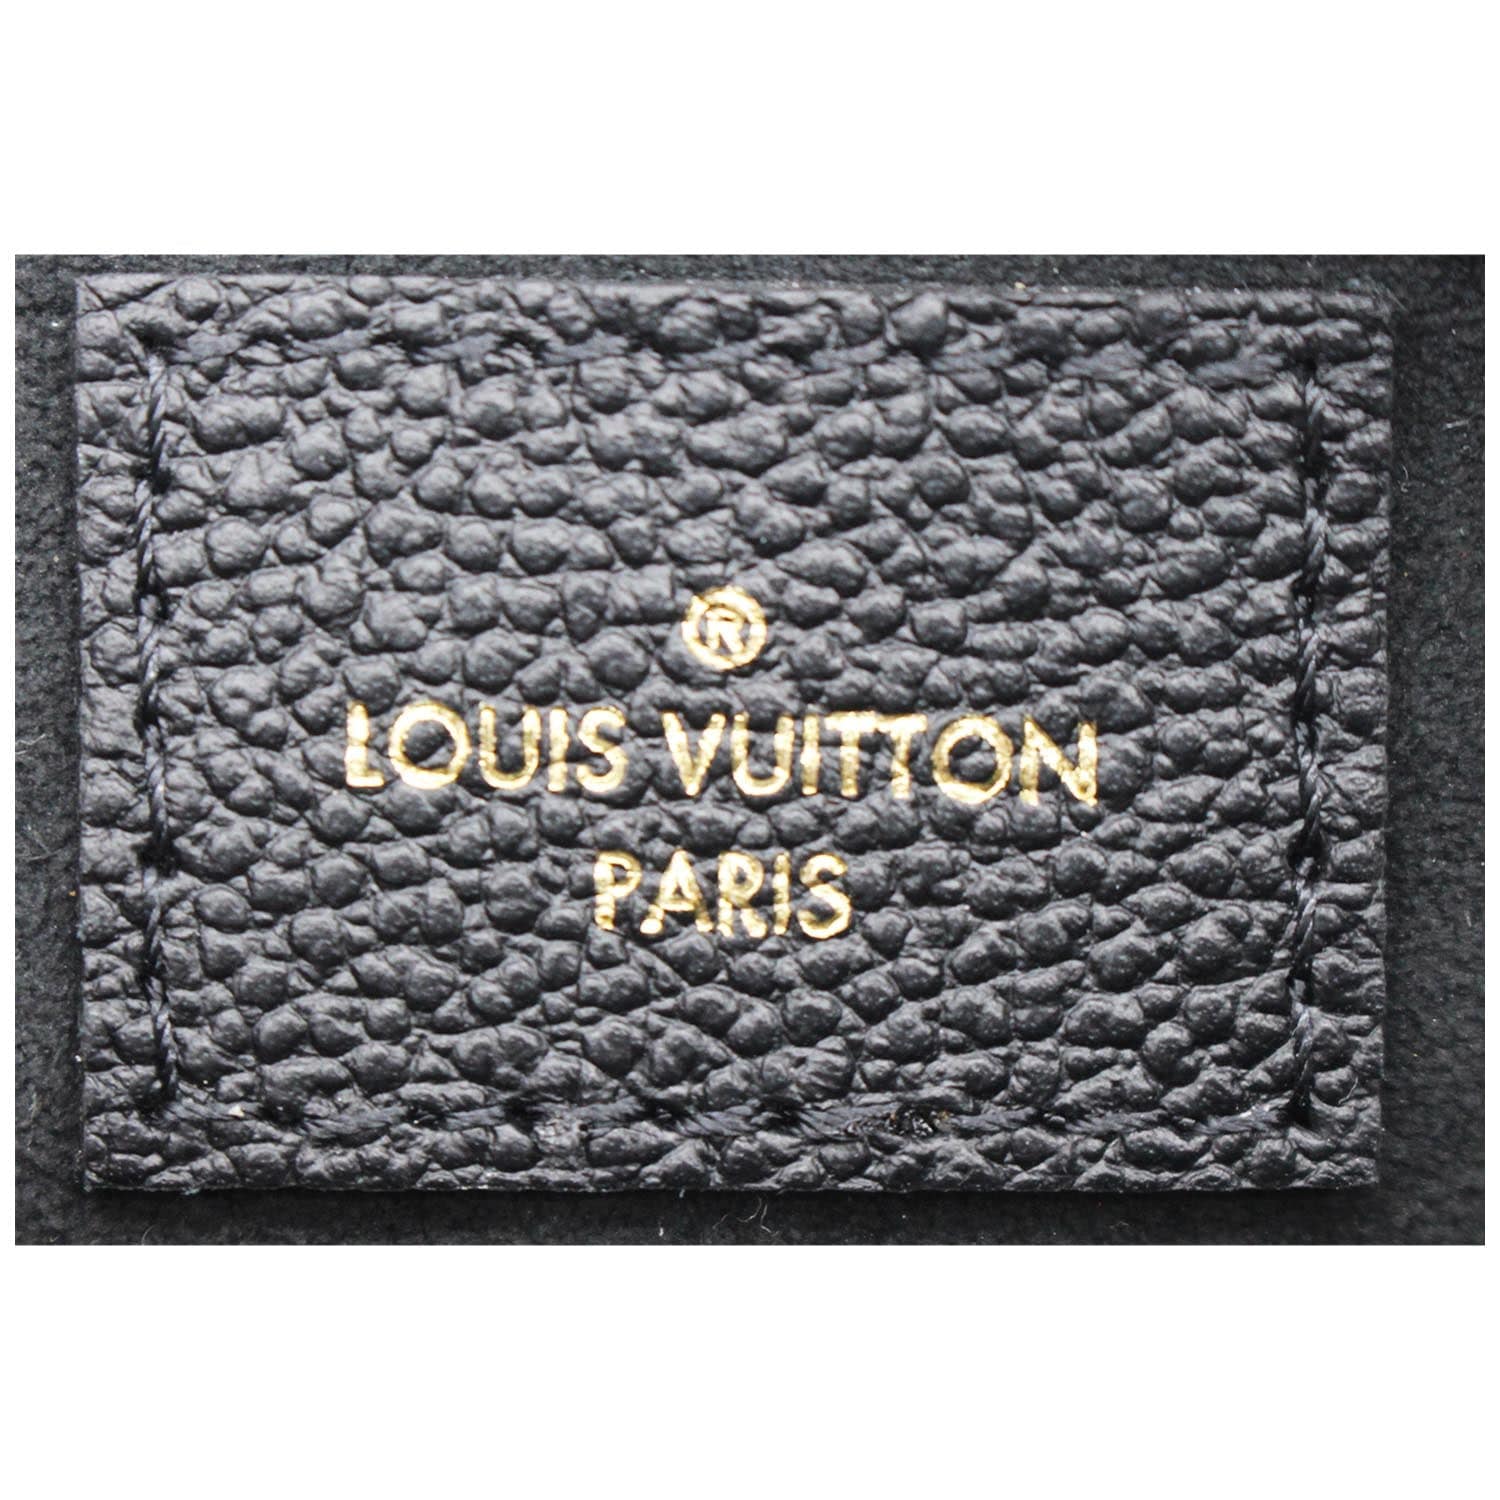 Louis Vuitton, Accessories, Louis Vuitton Paris Wallet